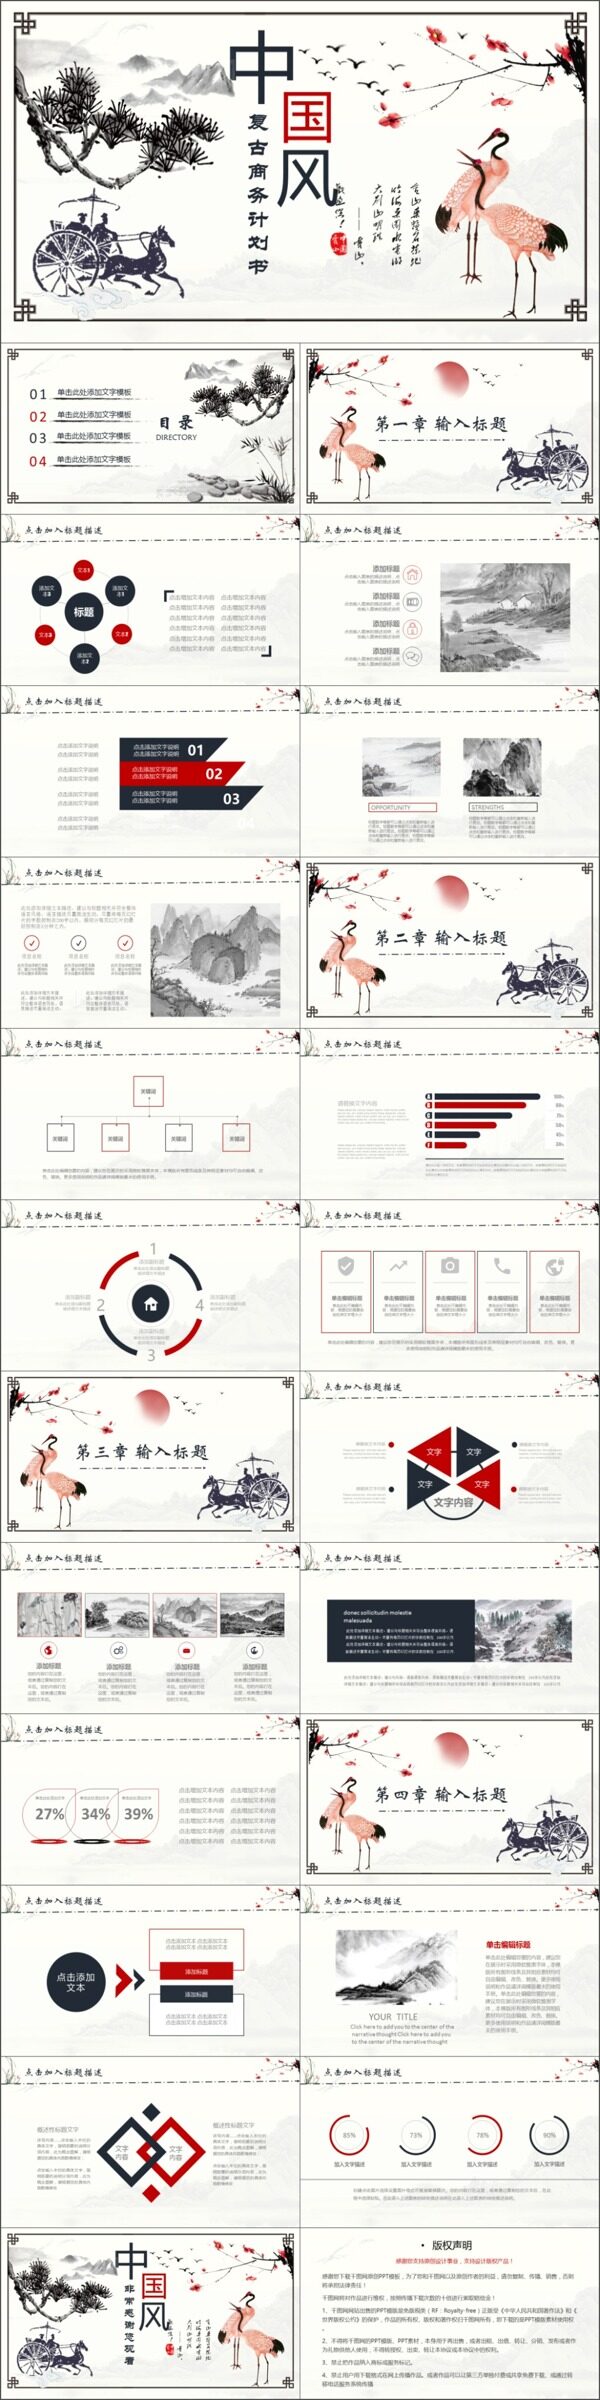 2019红黑色中国风商业计划书PPT模板